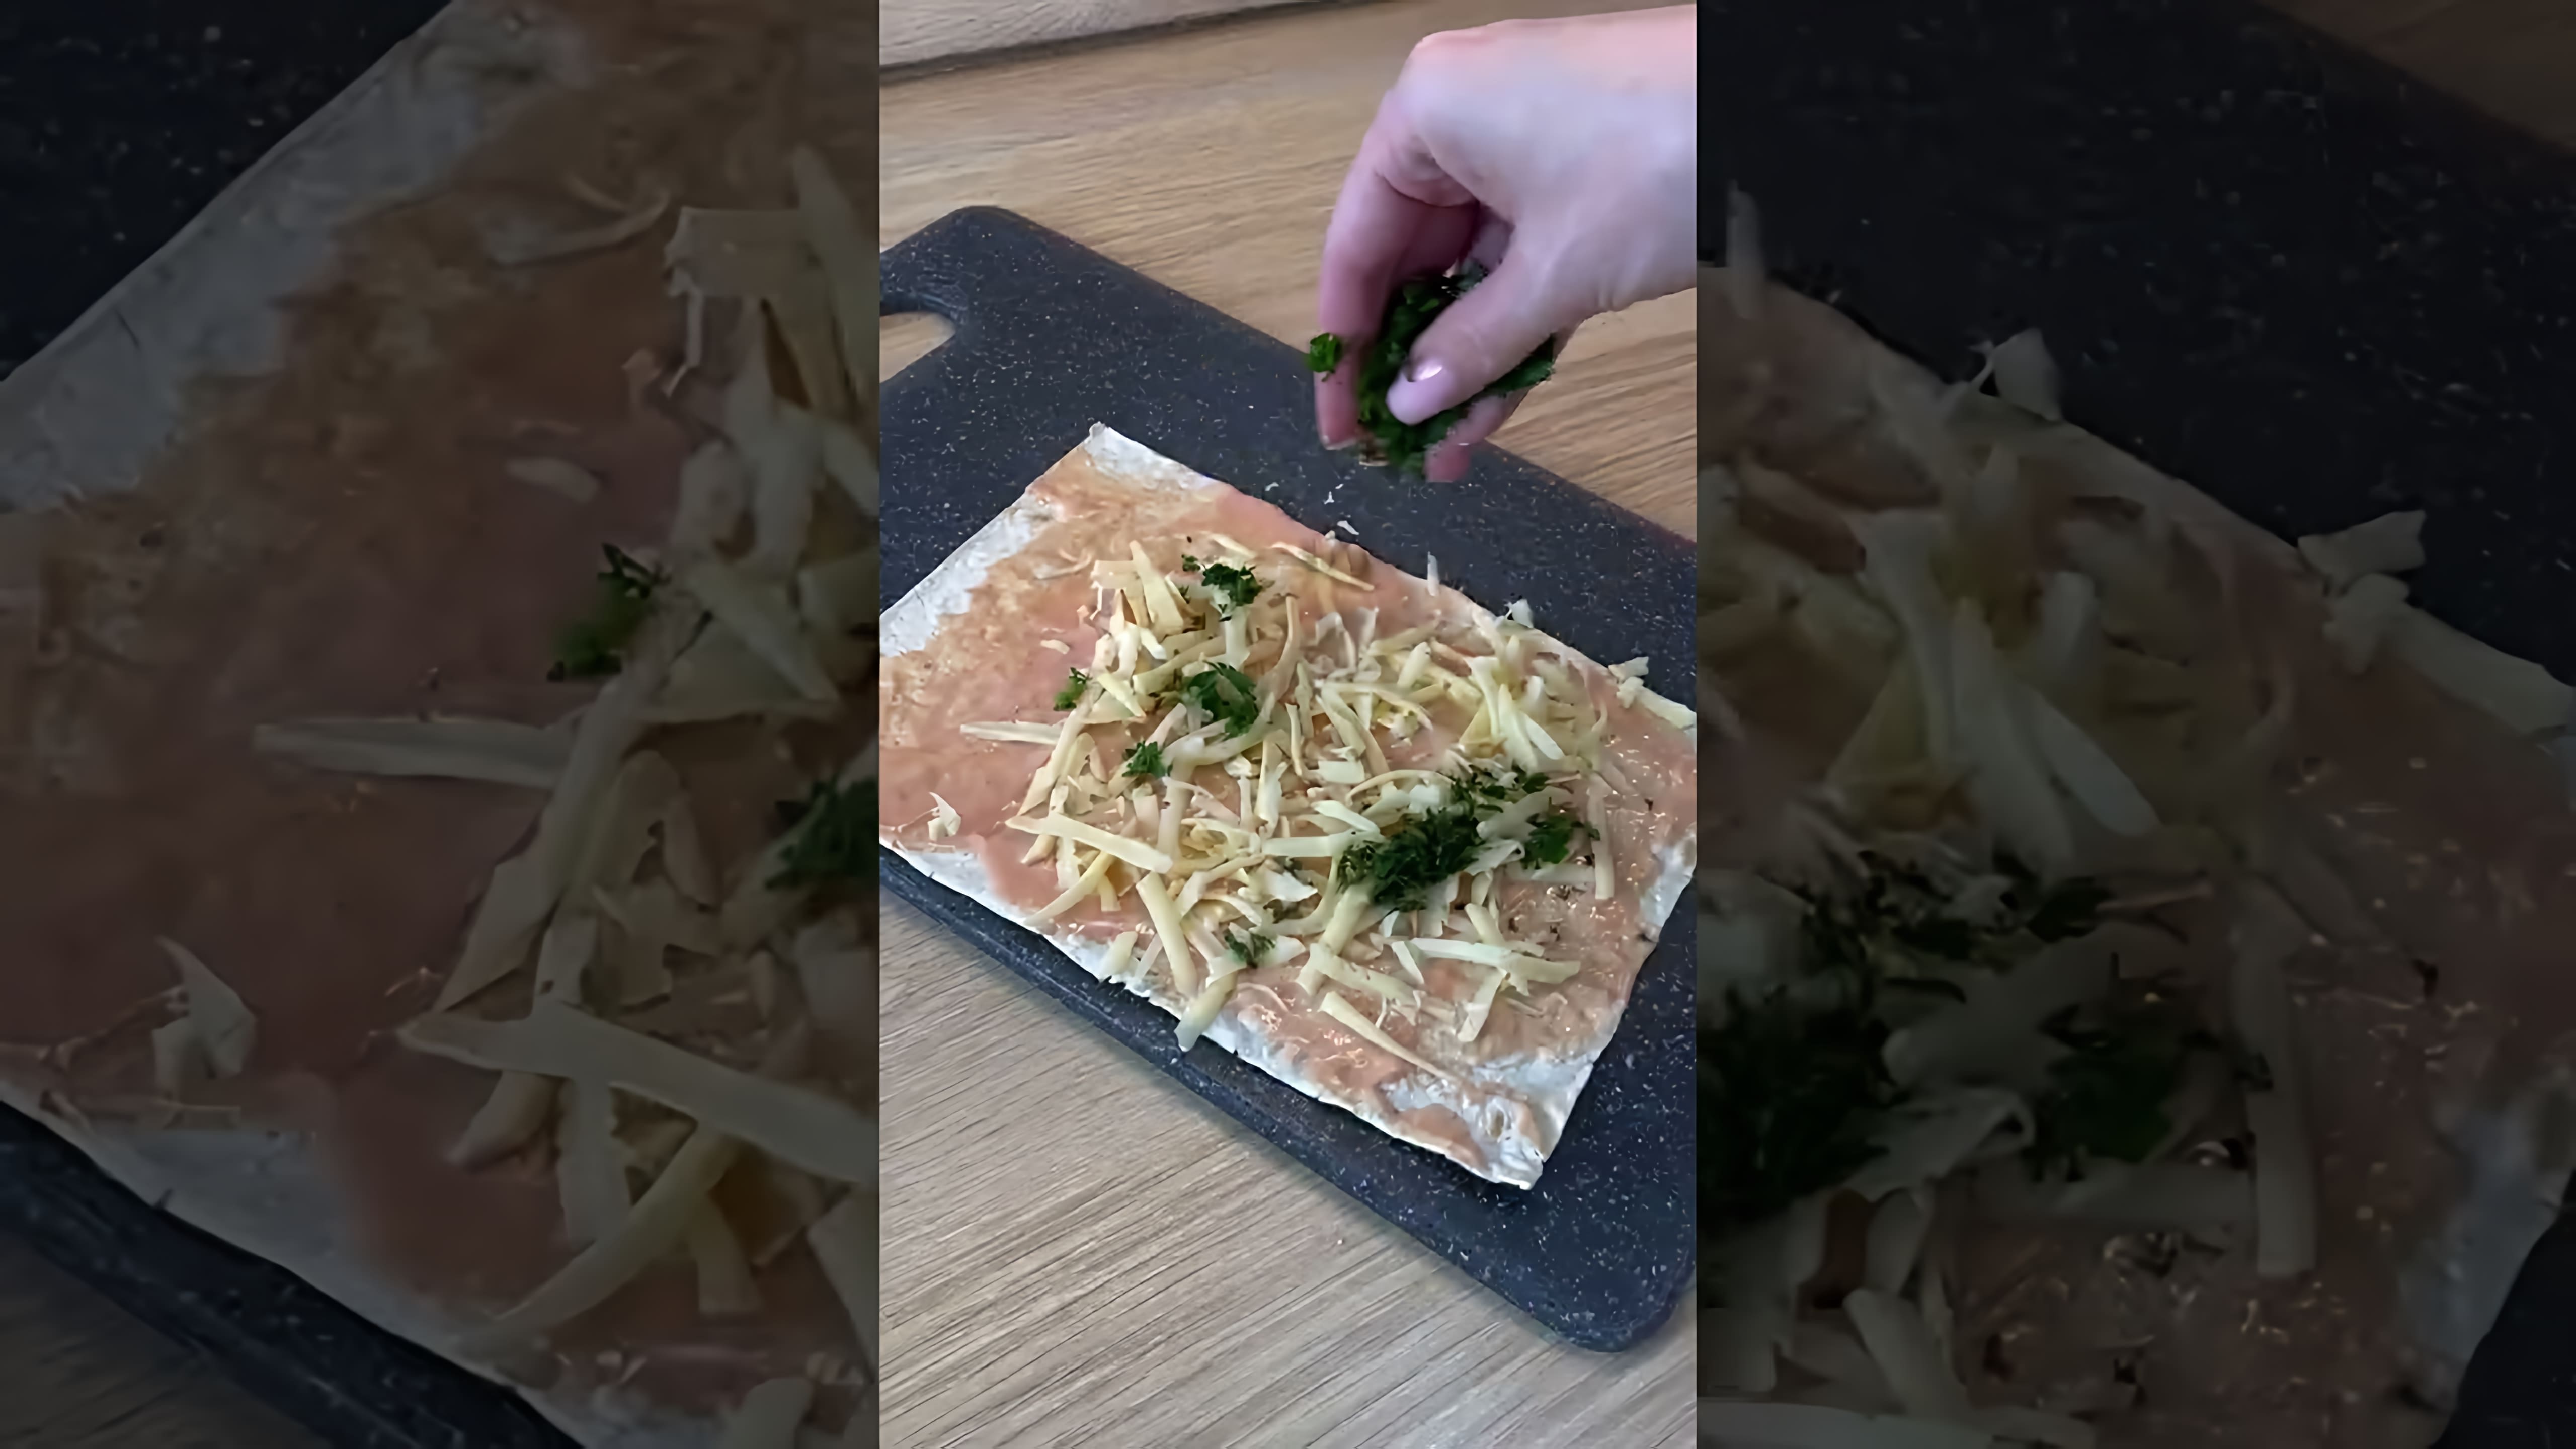 В этом видео демонстрируется рецепт приготовления сосисок в лаваше